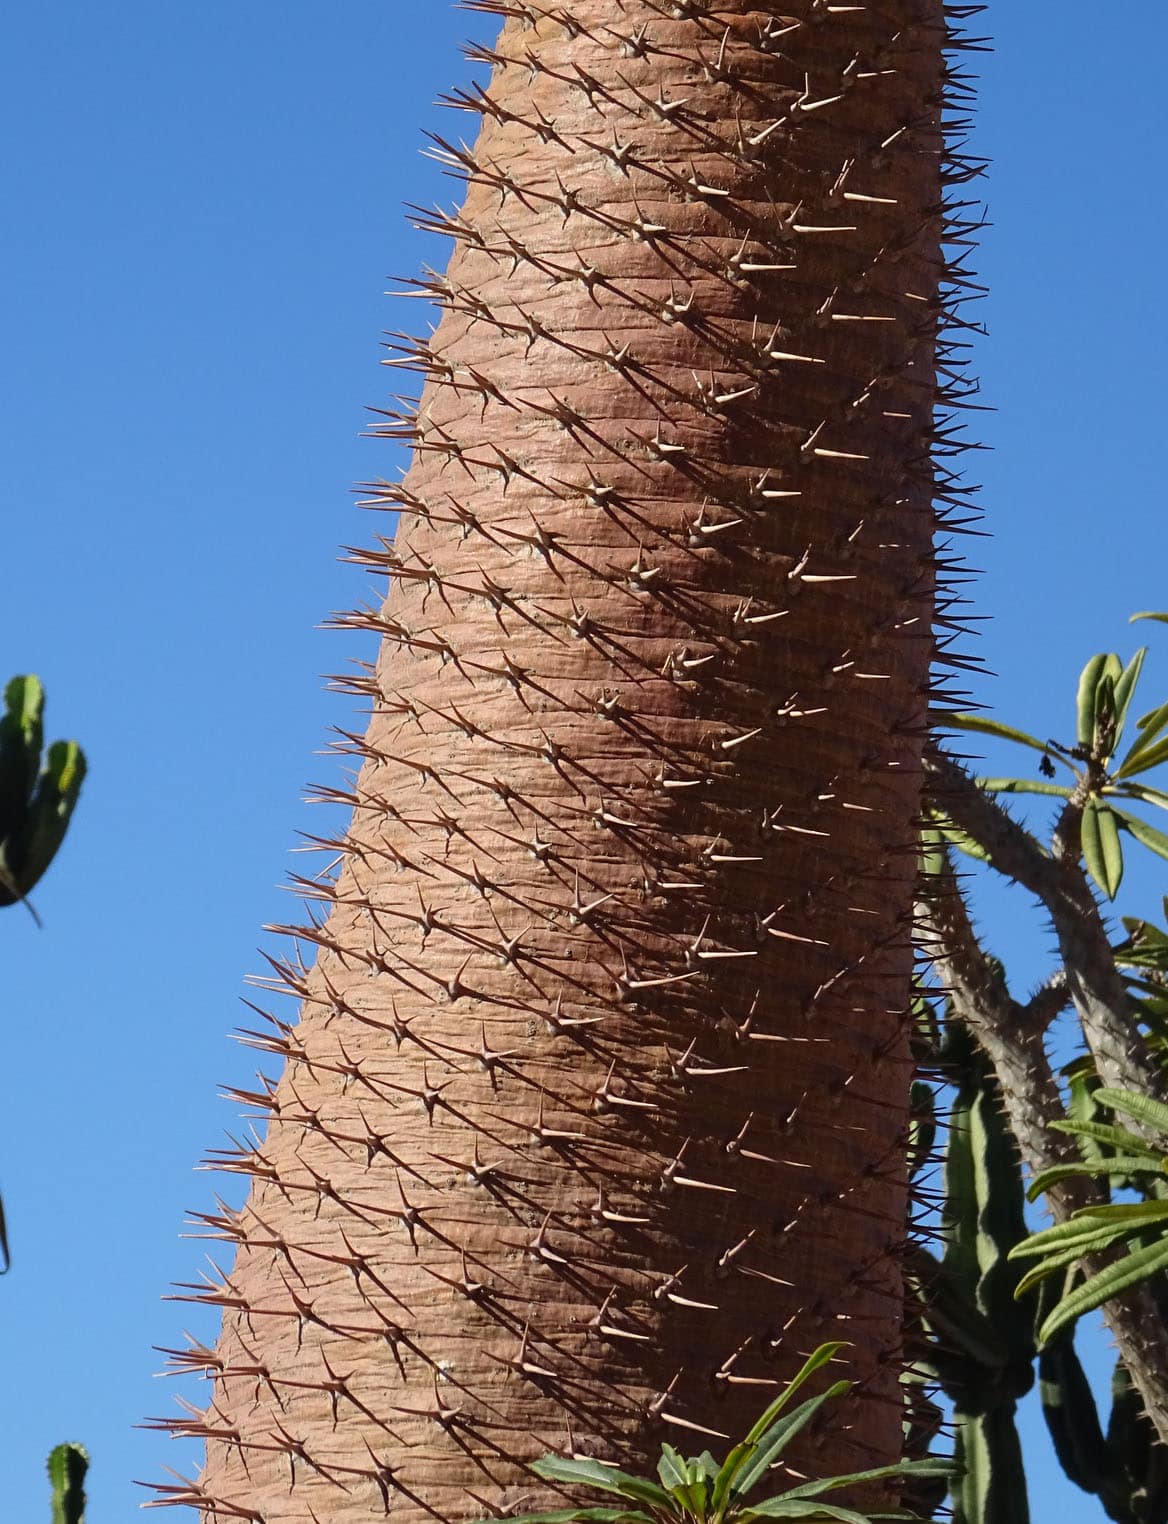 Pachypodium Lamerei seeds 10 Graines de Palmier de Madagascar